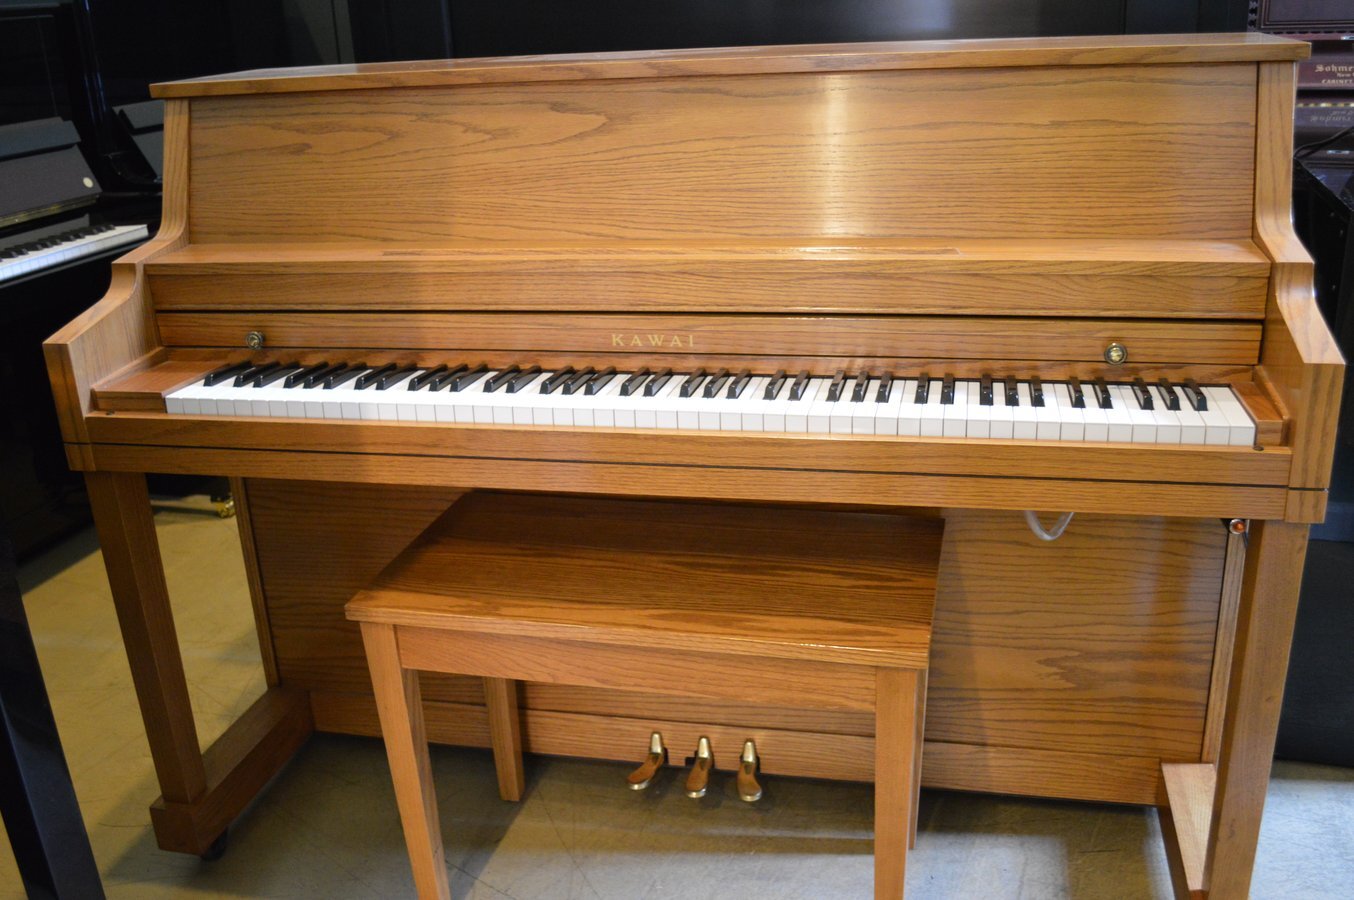 Kawai Studio Piano – Like New!